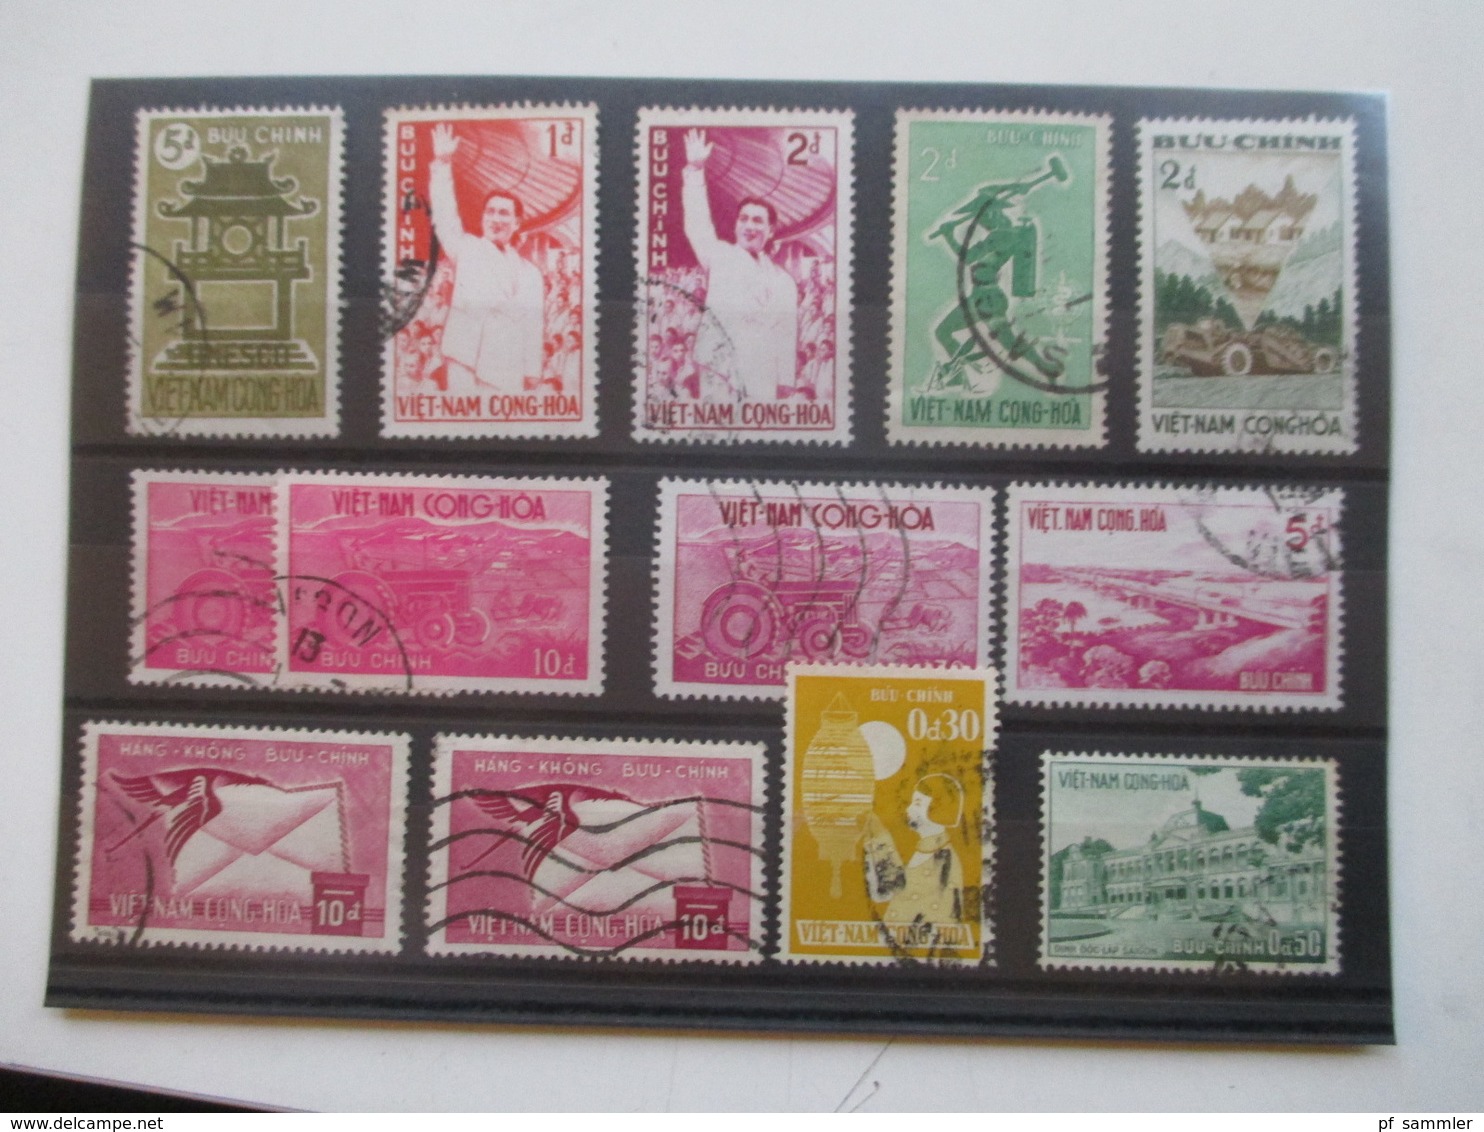 Vietnam Hunderte Gestempelte Marken Auf 23 Steckkarten! 1960er -90er Jahre! Auch 3 Blocks /viele Tolle Motive! Fundgrube - Vietnam